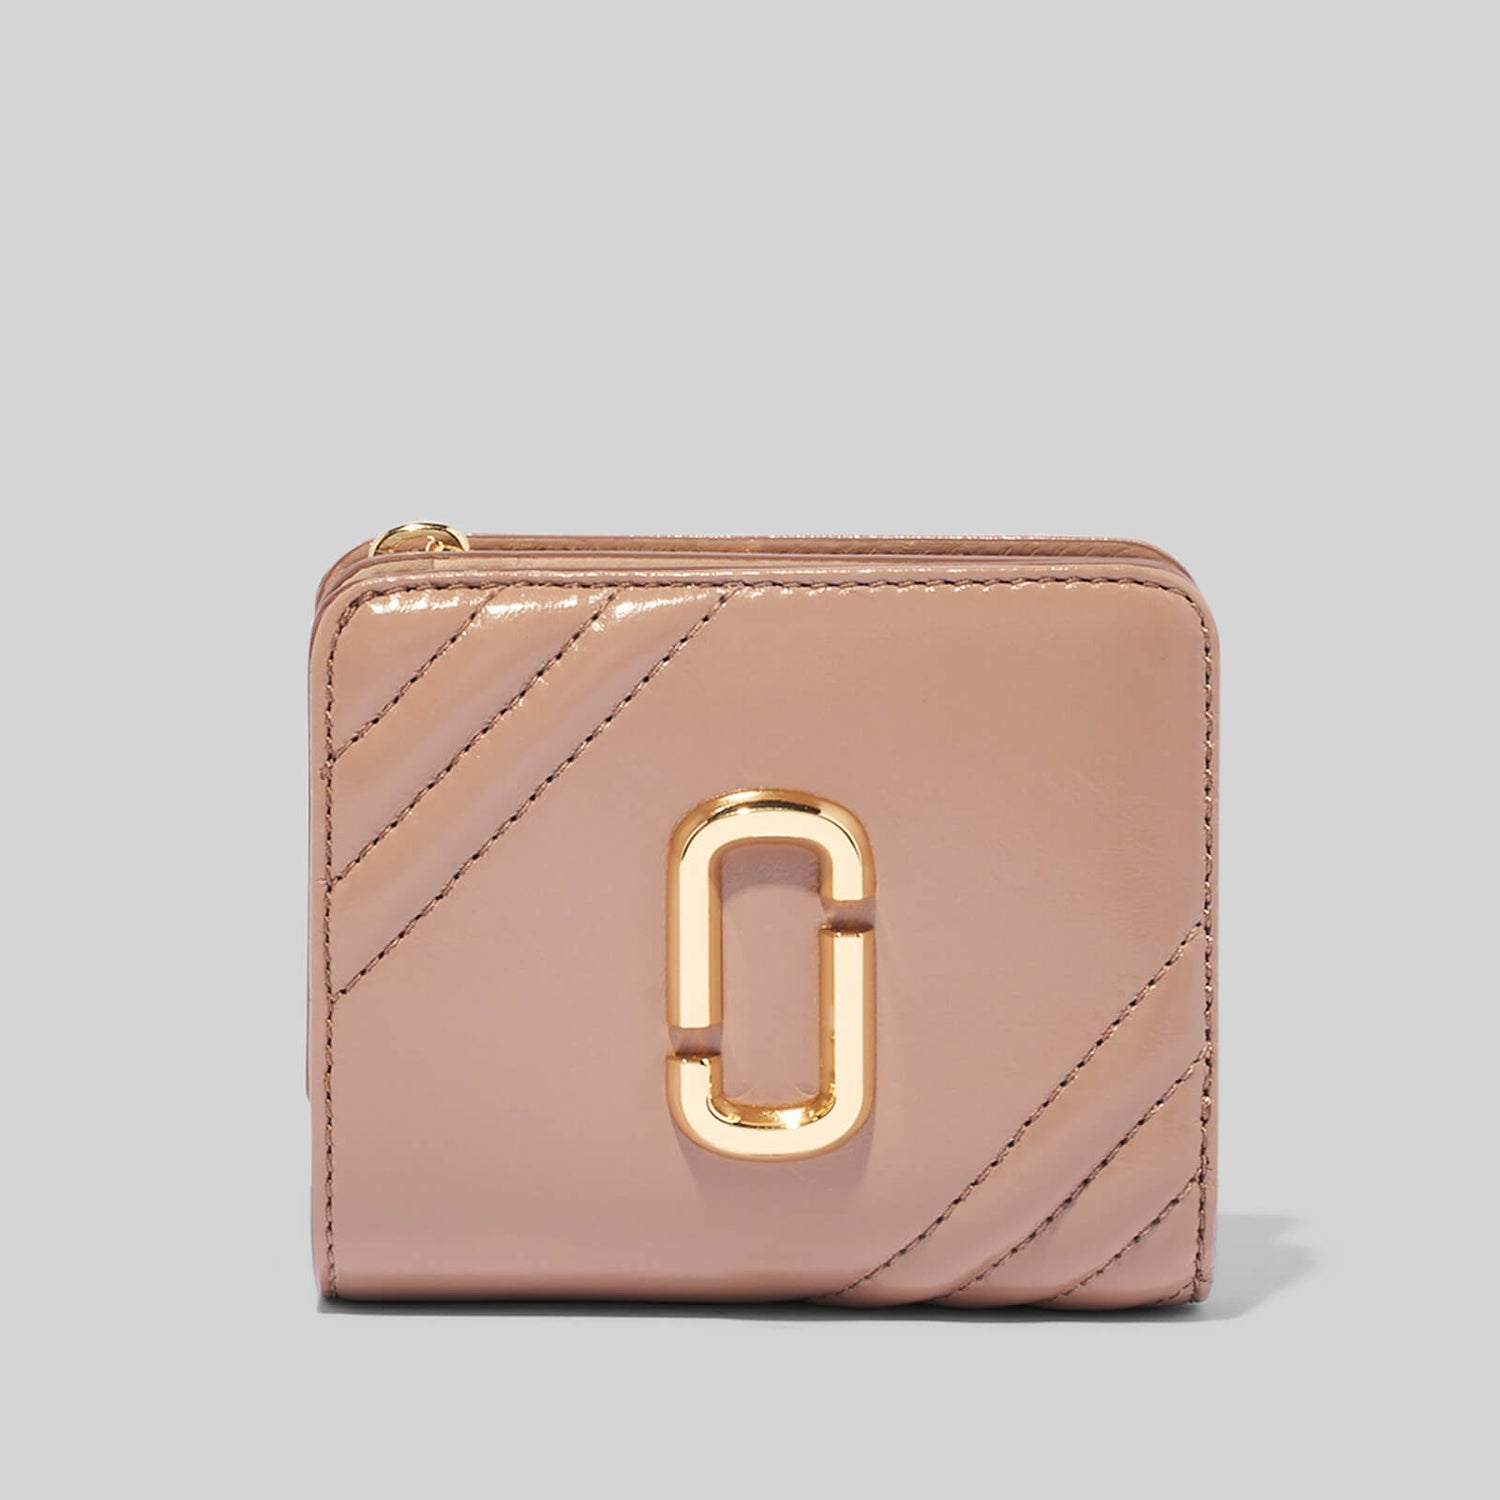 Marc Jacobs Women's Glamshot Mini Compact Wallet - Dusty Beige